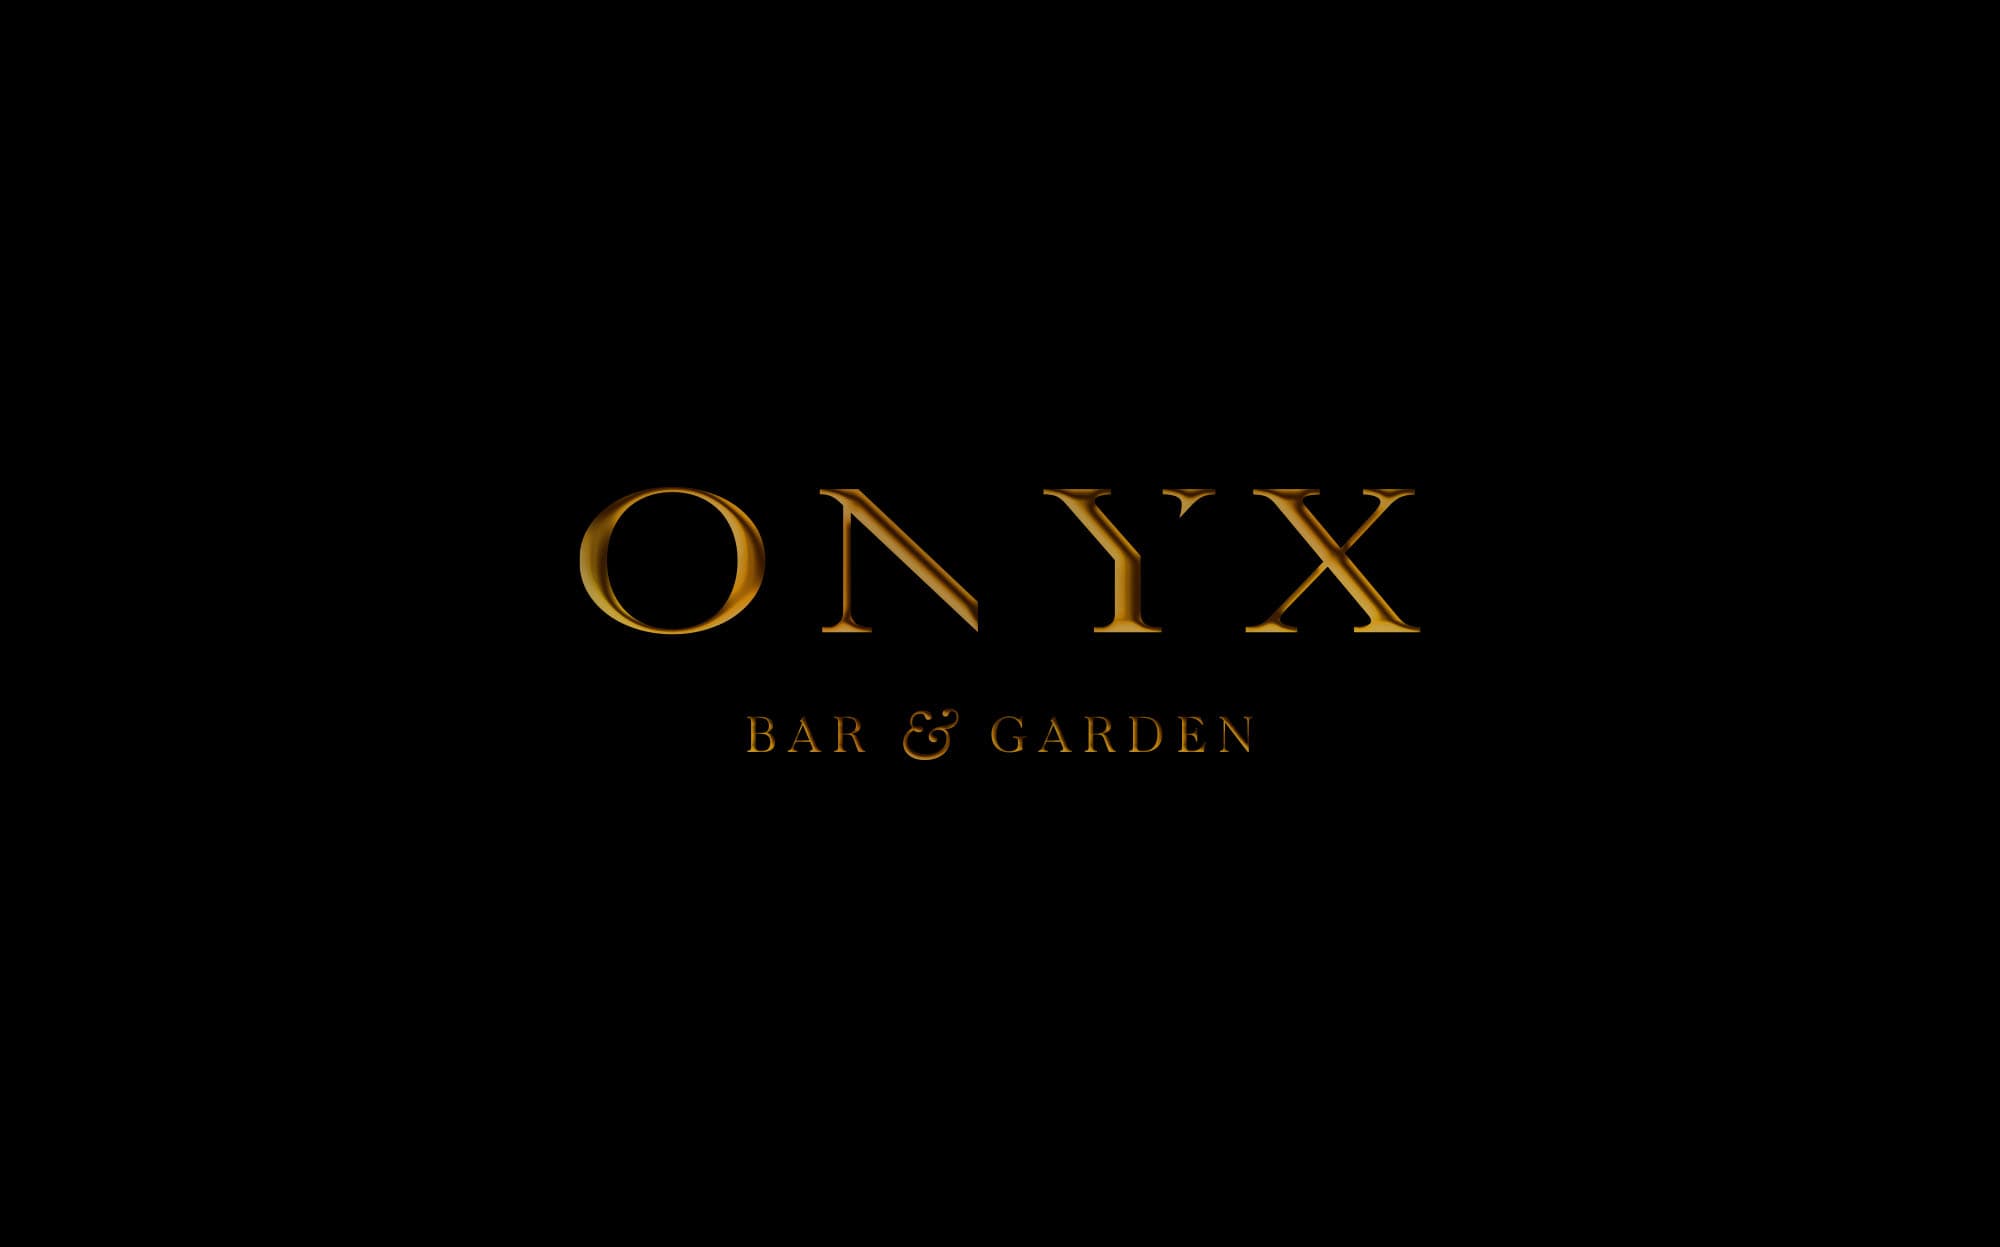 Onyx Bar & Garden